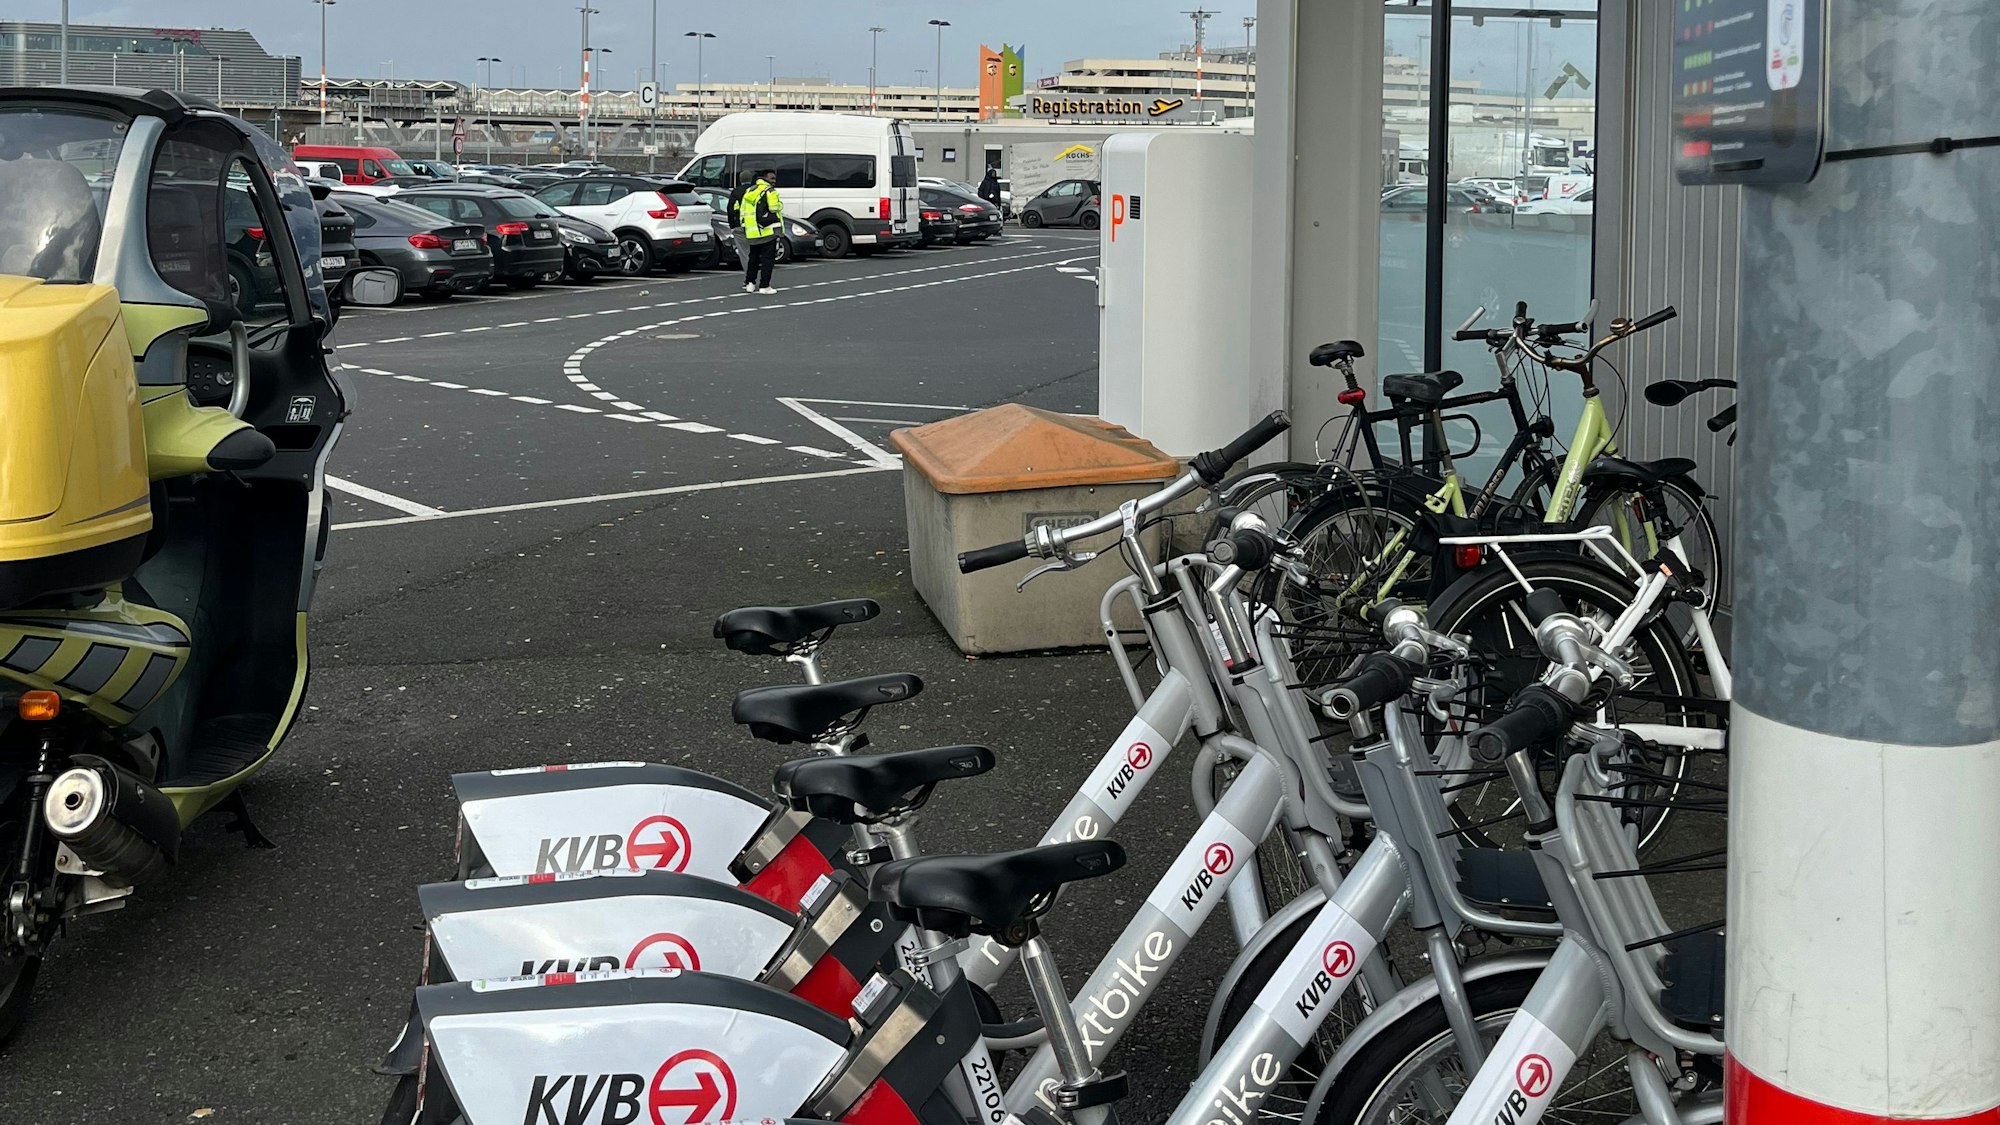 Leihräder mit der Aufschrift „KVB“ auf einem Parkplatz, im Hintergrund sieht man den Flughafen Köln/Bonn